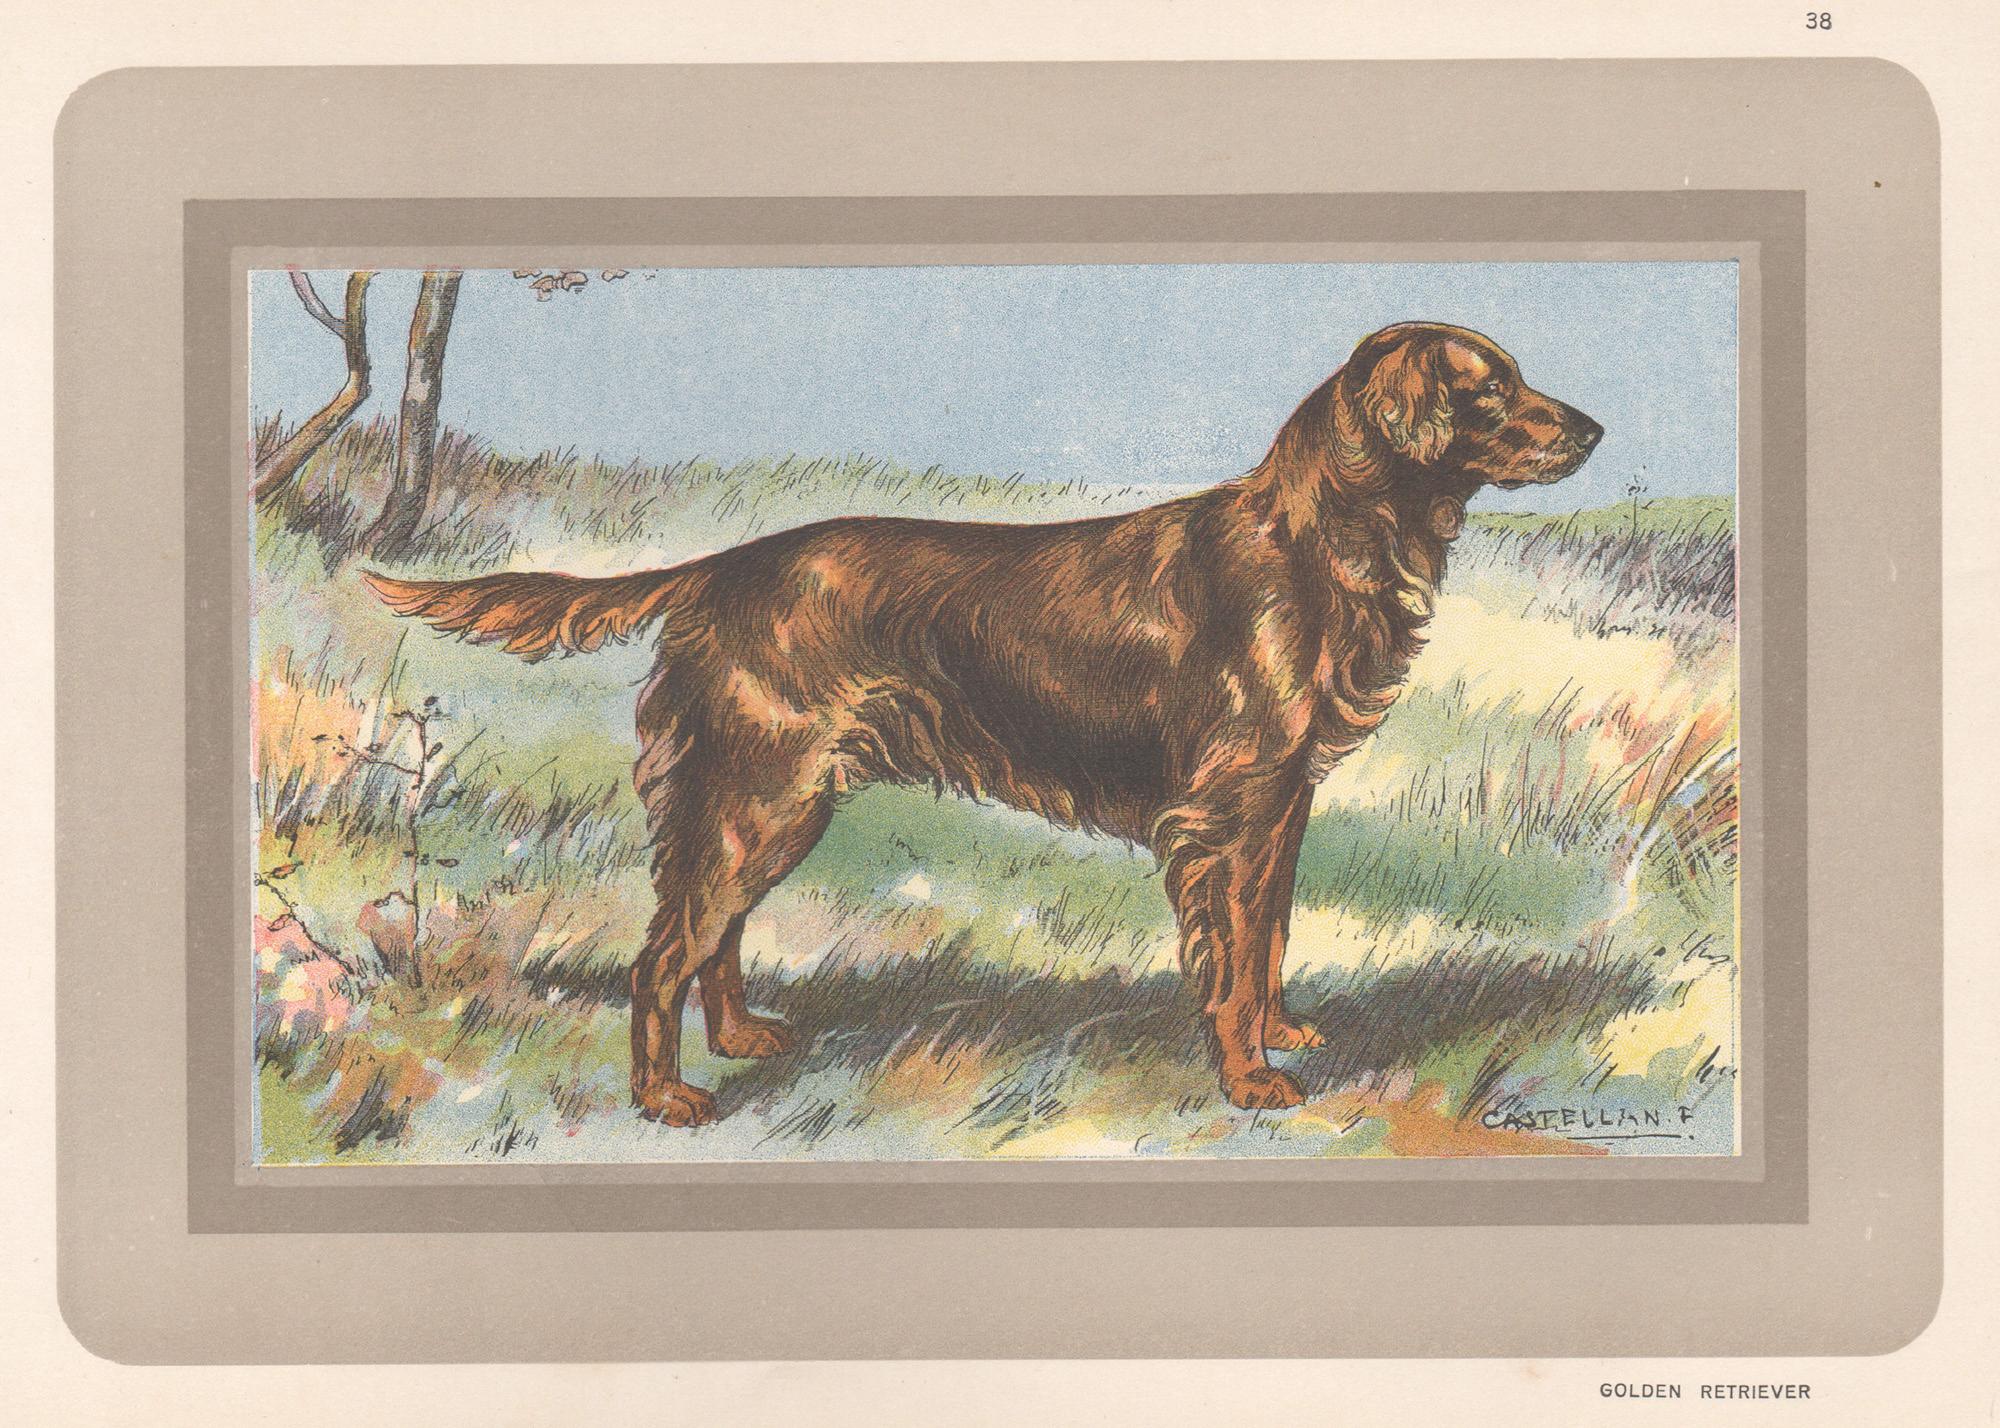 F Castellan Animal Print – Golden Retriever, Französischer Chromolithographiedruck mit Hund, 1931